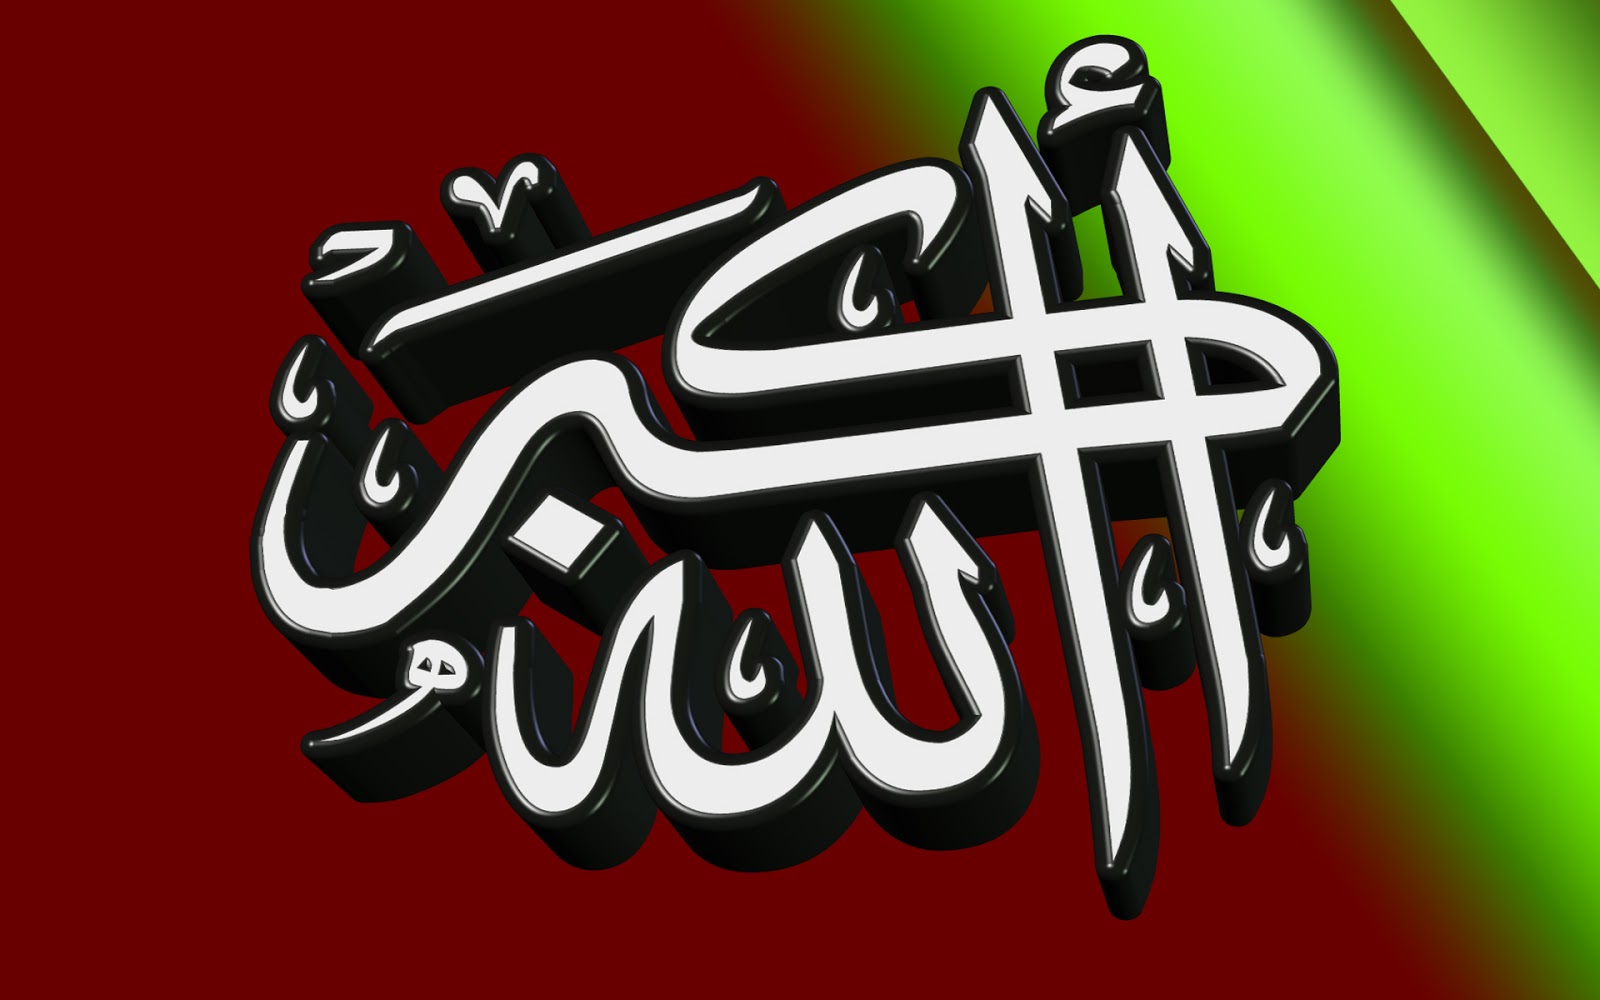 Download 17 Wallpaper Kaligrafi Allah | Mewarnai Gambar